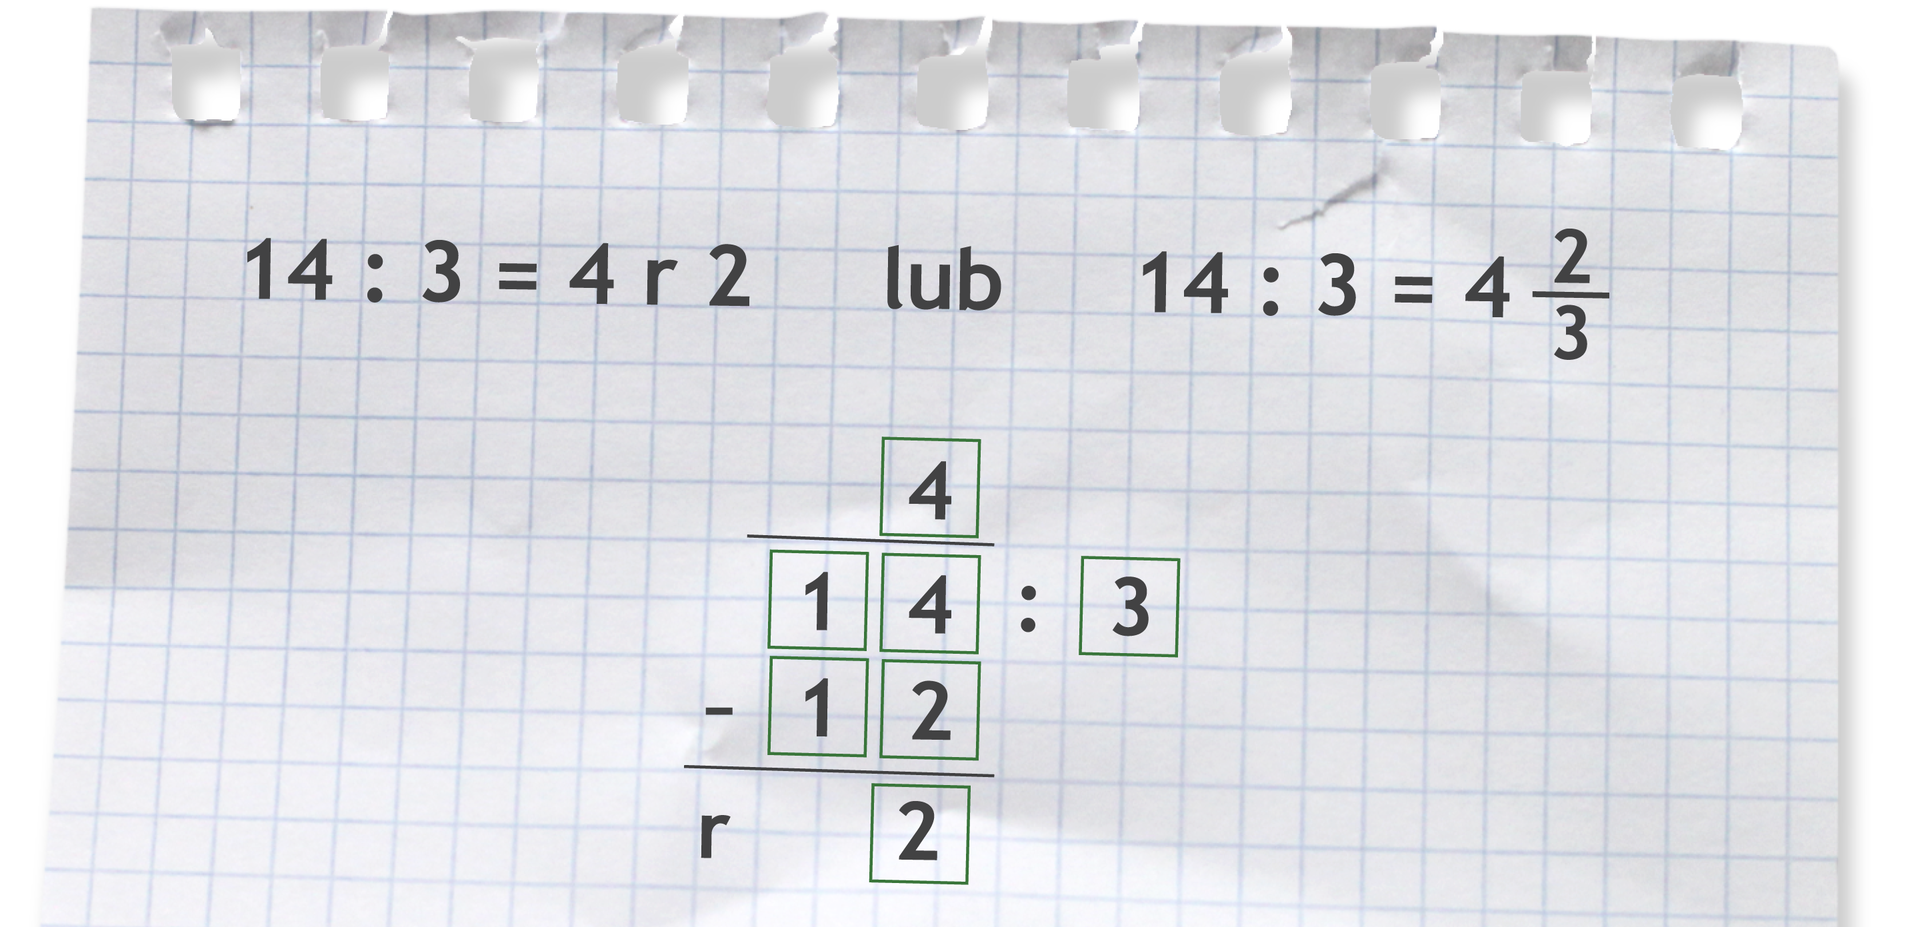 Przykład przedstawia trzy sposoby dzielenia. Pierwszy to dzielenie z resztą: 14 podzielić na 3 równa się 4 reszty dwa. Drugi sposób to dzielenie, którego wynik przedstawiono w postaci liczby mieszanej: 14 podzielić na 3 równa się 4 i dwie trzecie. Trzeci sposób to dzielenie pisemne z resztą. 14 podzielić na trzy to 4, następnie 4 razy trzy daje 12, 14 odjąć 12 to 2, zatem wynik dzielenia wynosi 4 reszty dwa.